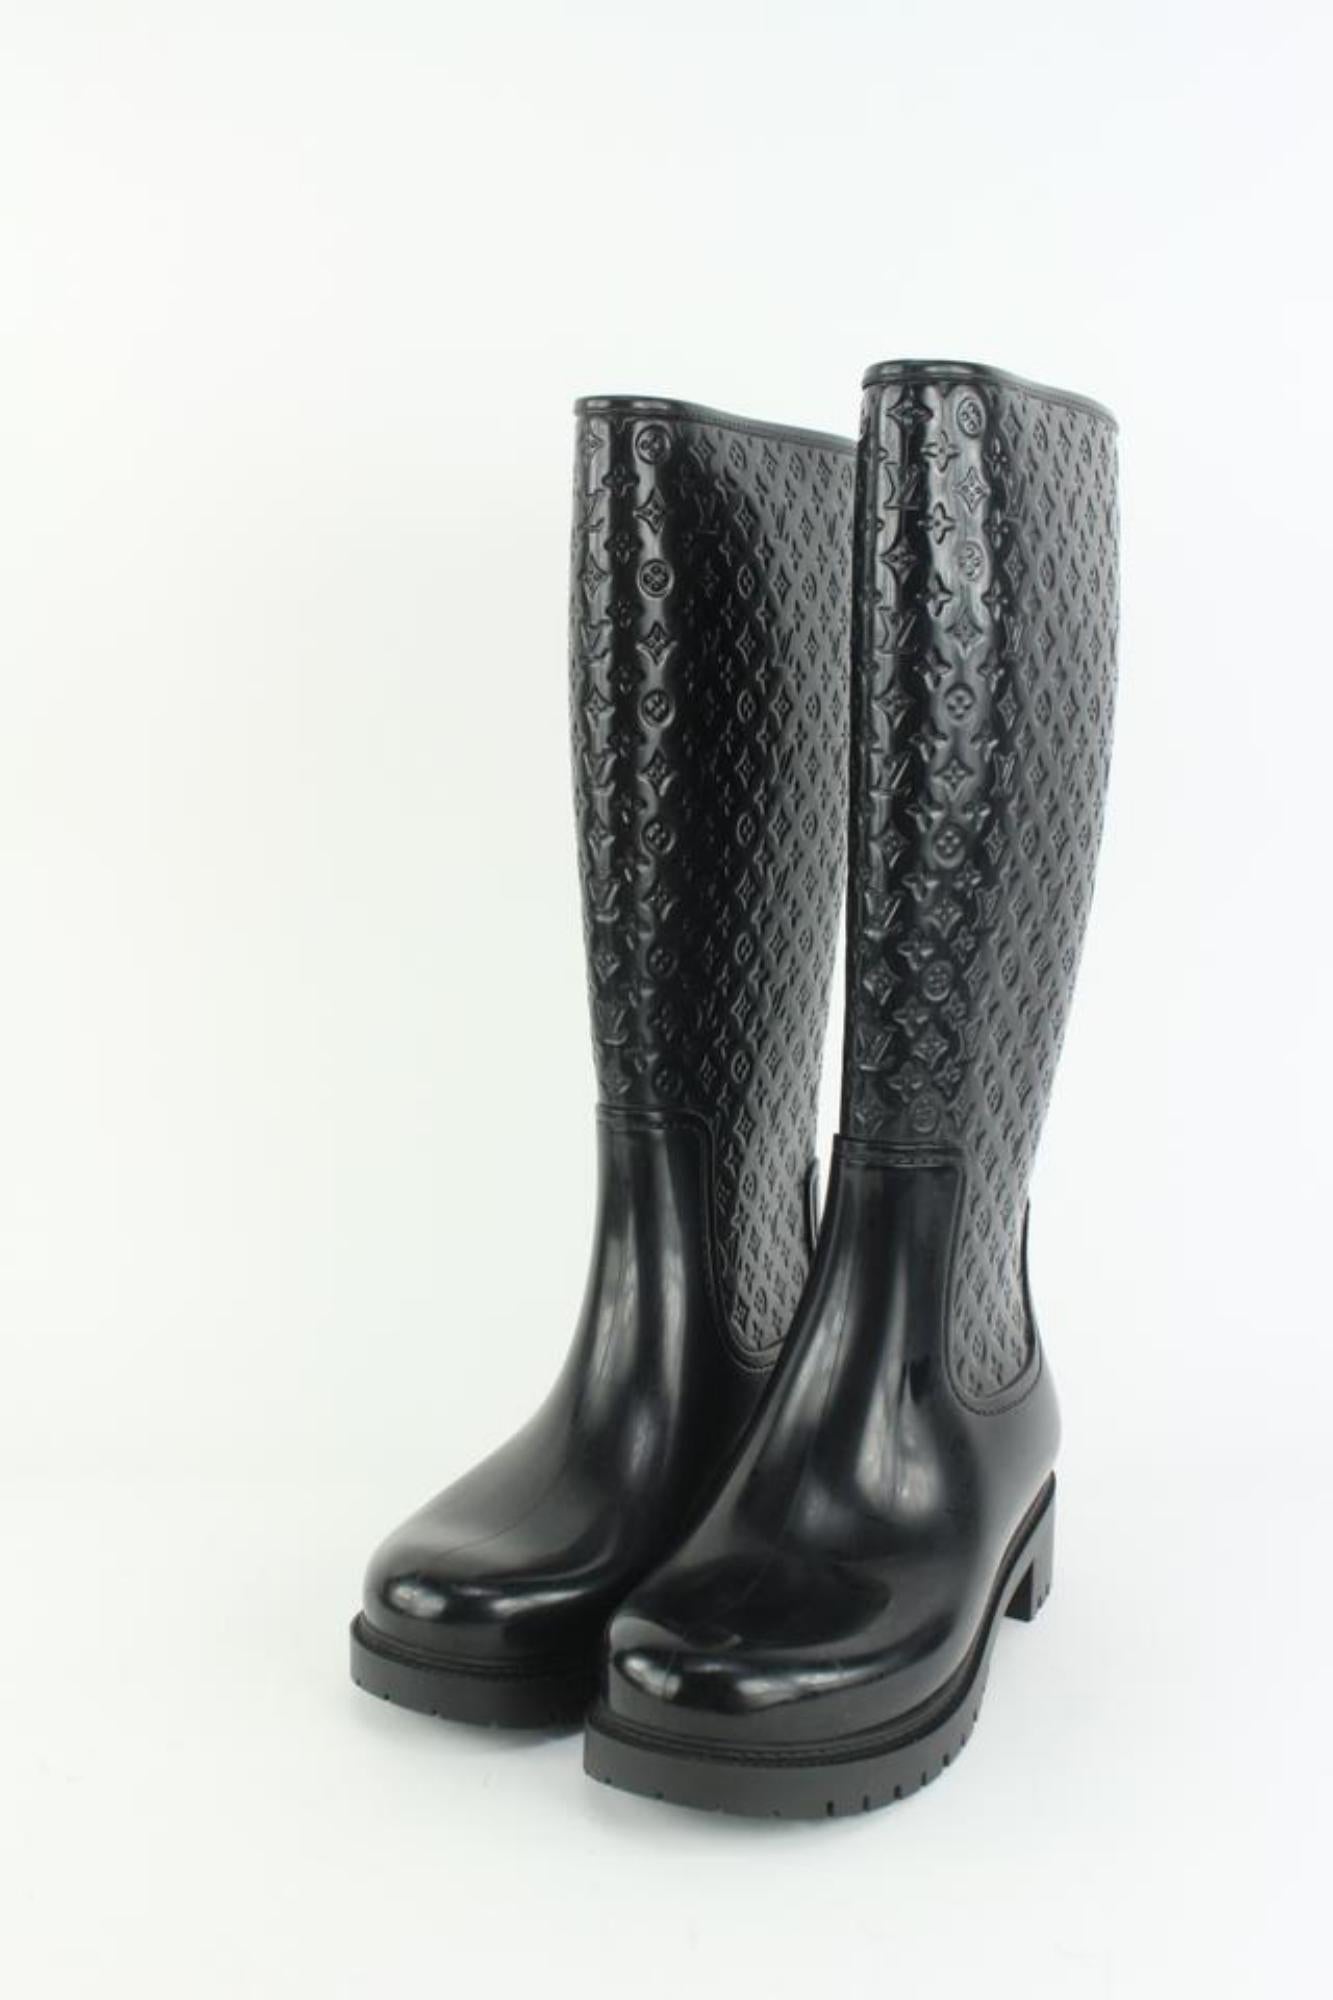 Louis Vuitton Women's 36 Black Rubber Rainboots Tall Rain Boots 111lv9 For Sale 6